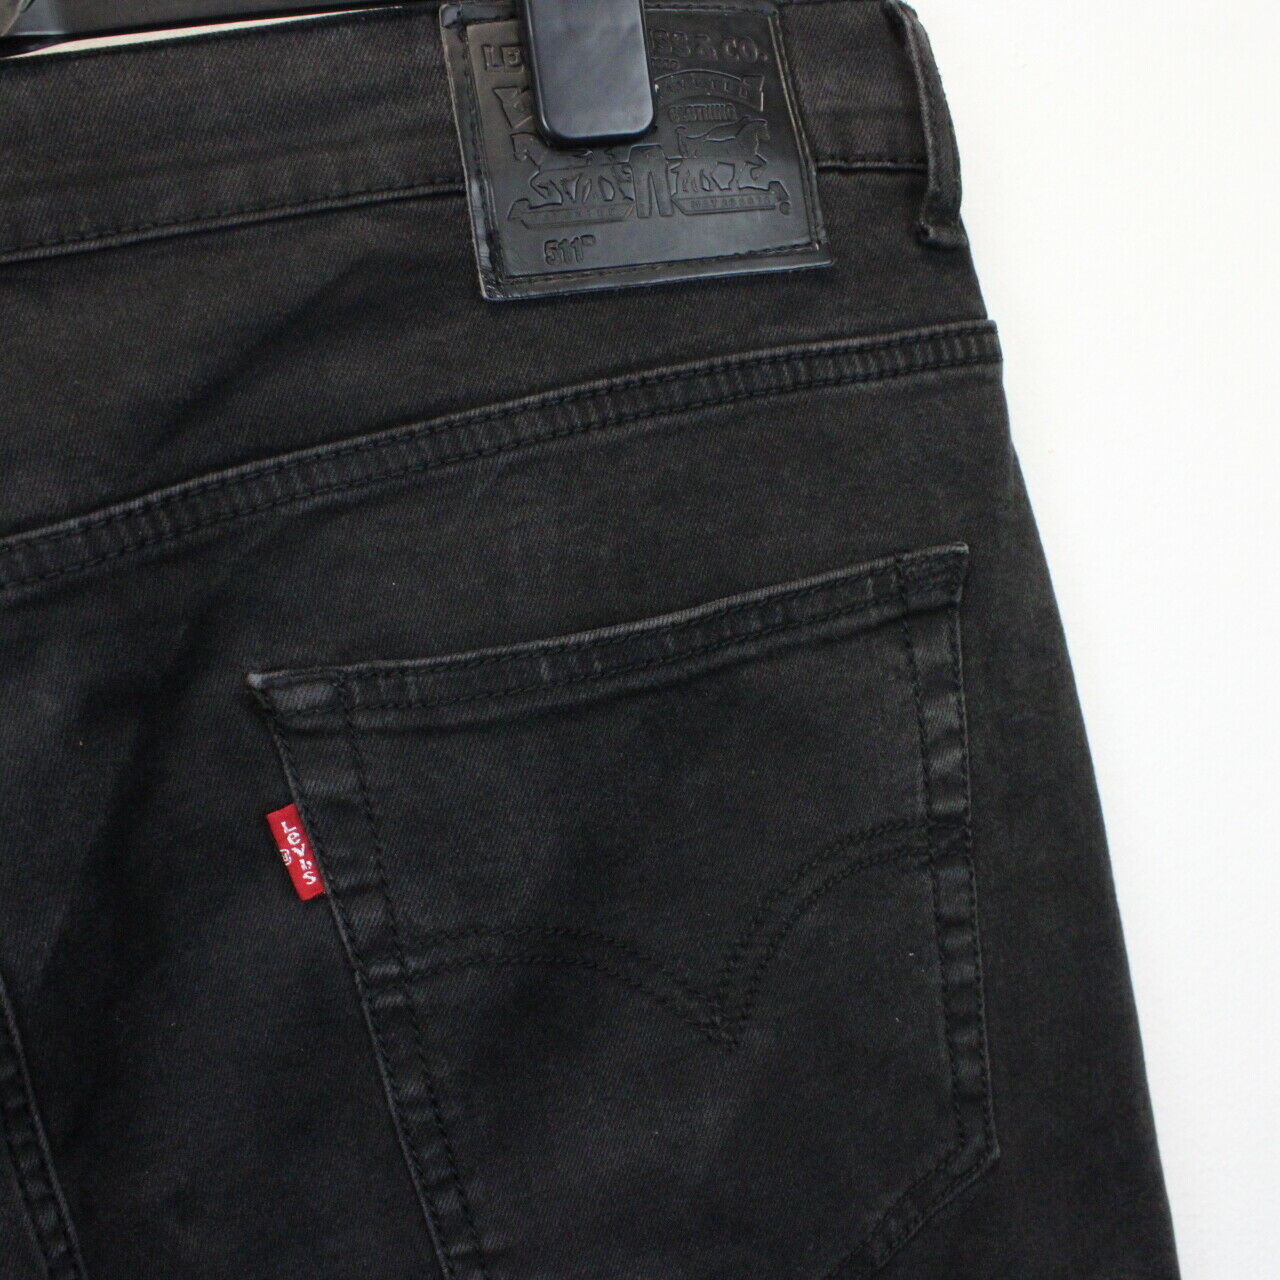 LEVIS 511 Jeans Black | W40 L34